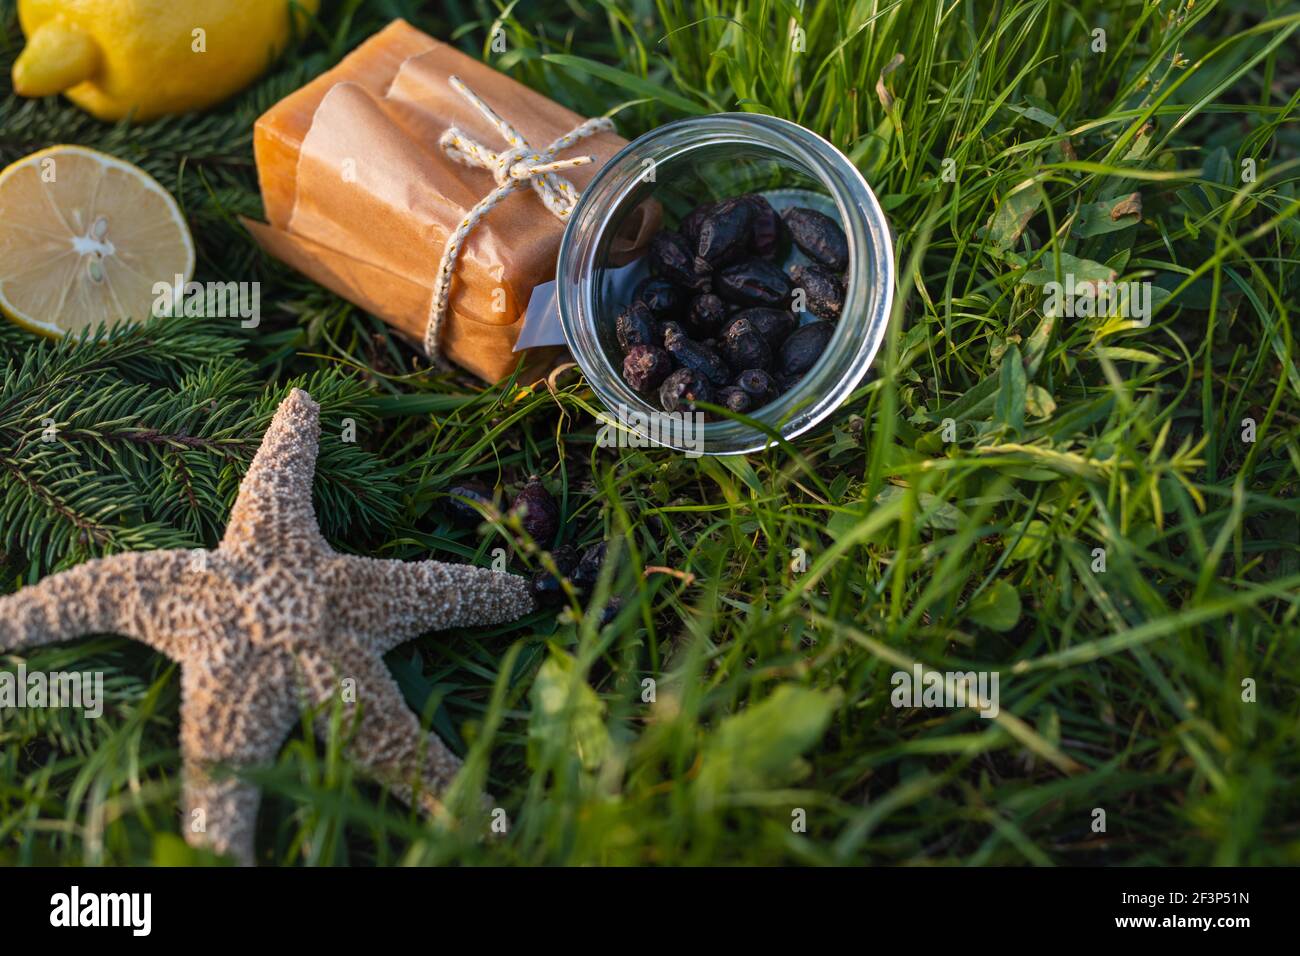 Natürliche Reinigungsmittel. Naturseife, getrocknete Beeren, Zitrone und Seesterne auf dem Gras. Außenhintergrund. Stockfoto